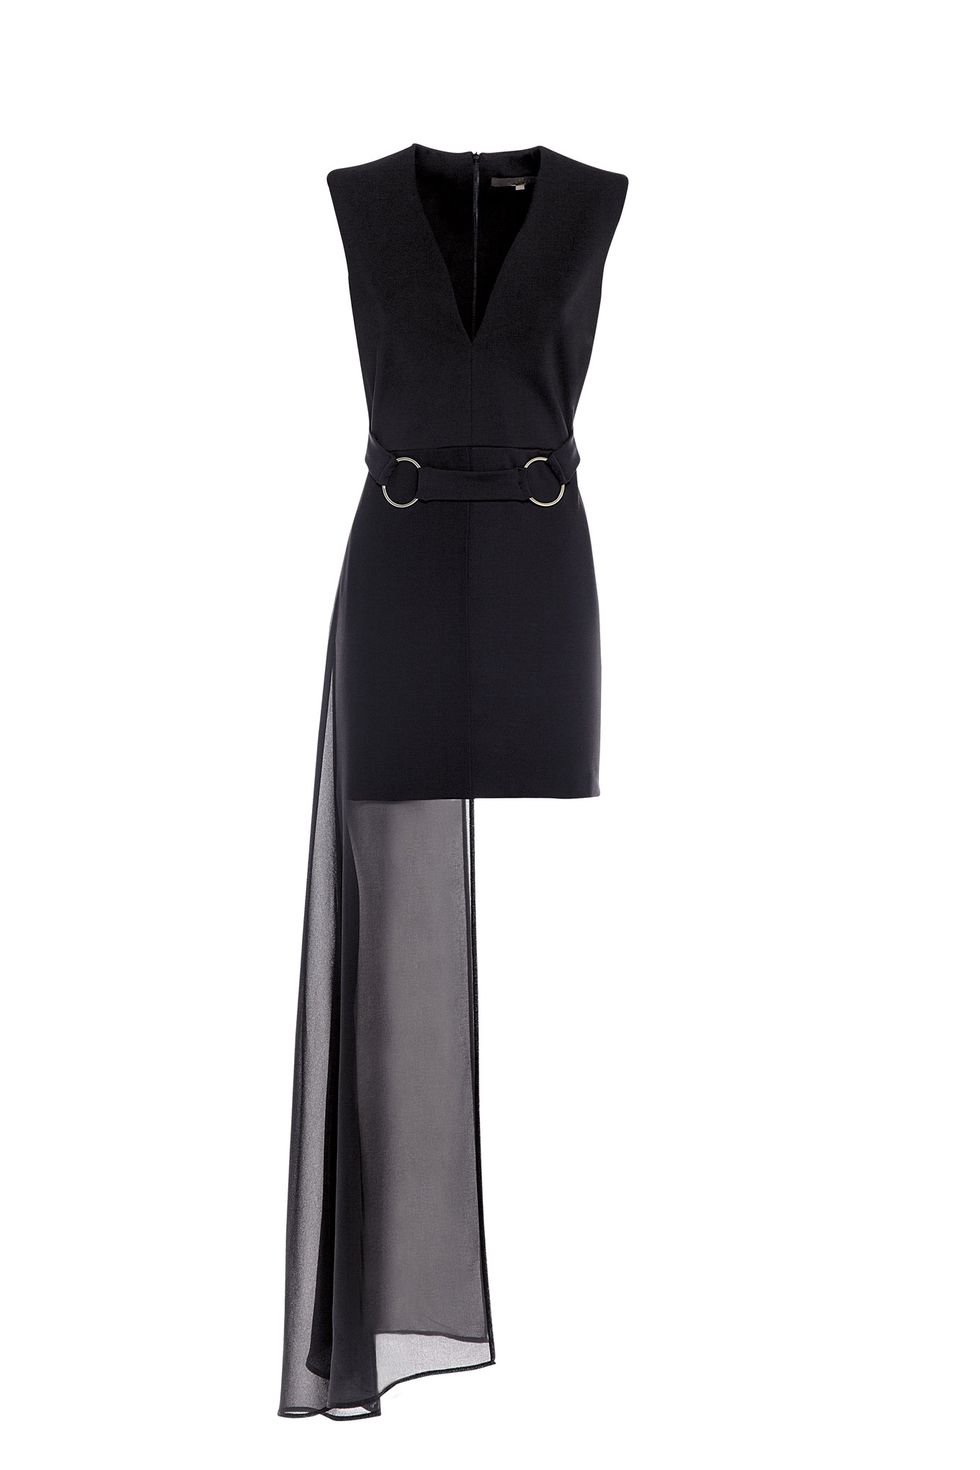 Il vestito nero corto davanti e lungo dietro è elegantissimo e lo puoi indossare per una cerimonia sia di giorno sia di sera ecco le tendenze moda 2018.